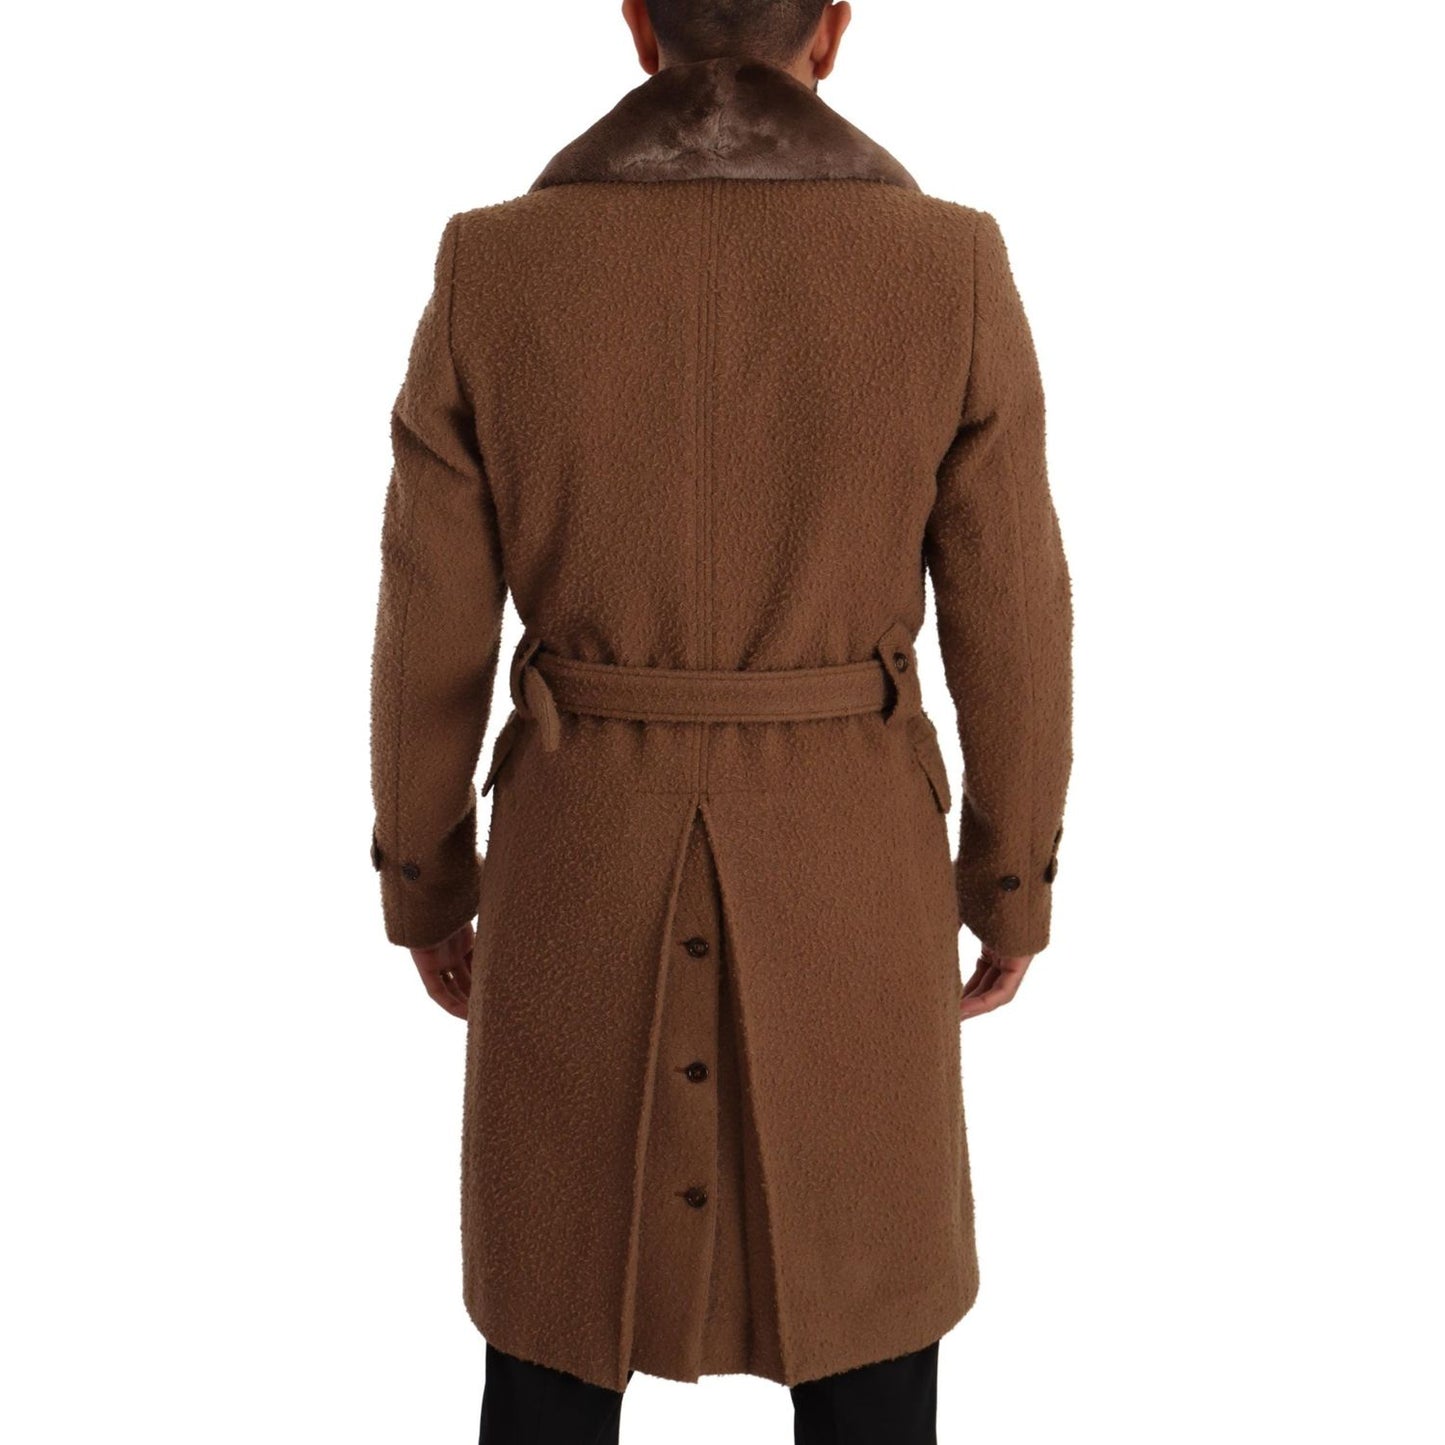 Dolce & Gabbana Elegant Double Breasted Wool Overcoat brown-wool-long-double-breasted-overcoat-jacket IMG_5043-scaled-a49950bd-9e5.jpg